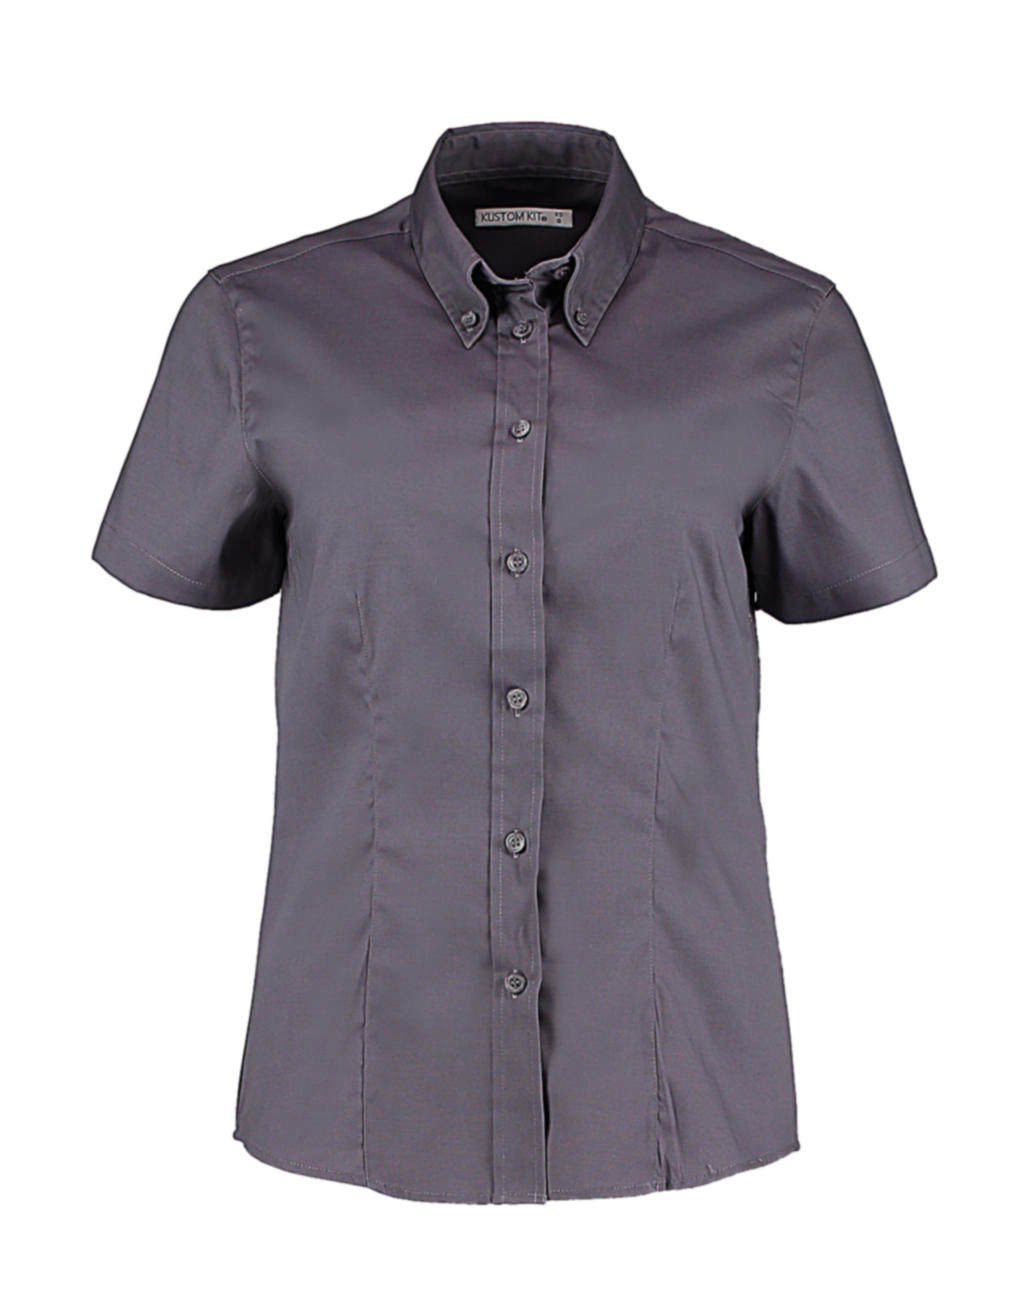 Women`s Tailored Fit Premium Oxford Shirt SSL zum Besticken und Bedrucken in der Farbe Charcoal mit Ihren Logo, Schriftzug oder Motiv.